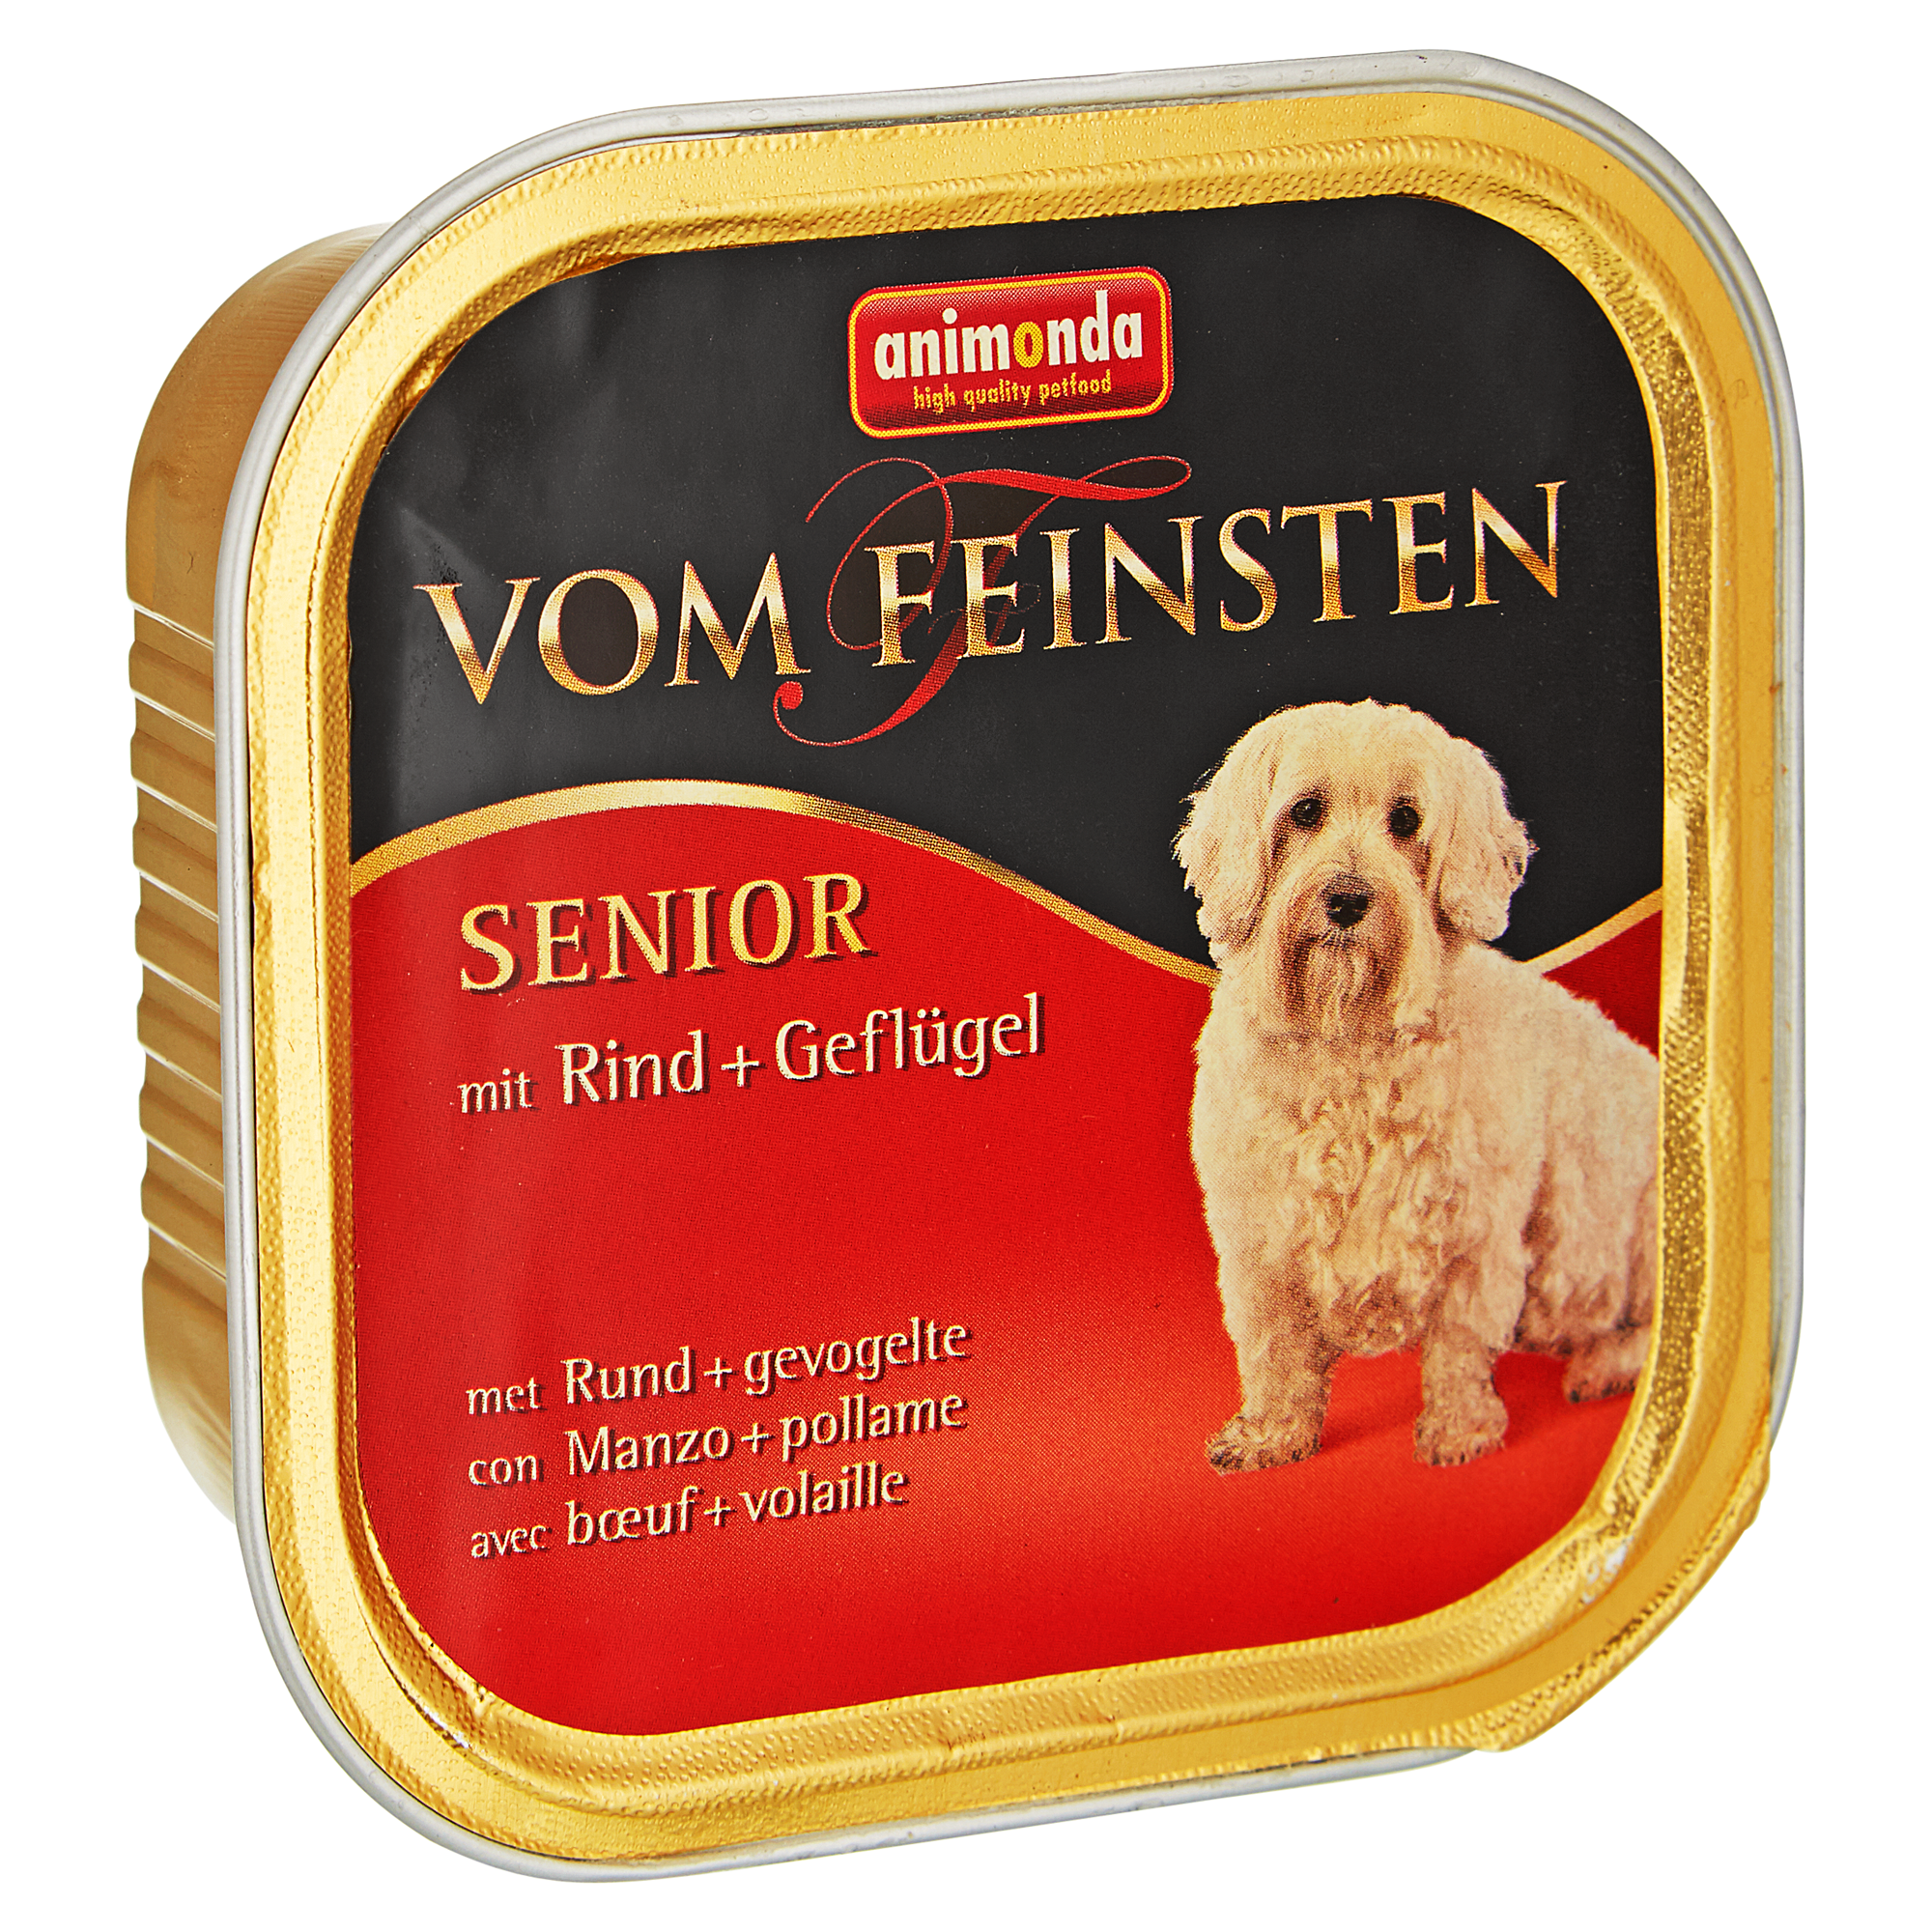 Hundenassfutter "Vom Feinsten" Senior mit Rind/Geflügel 150 g + product picture